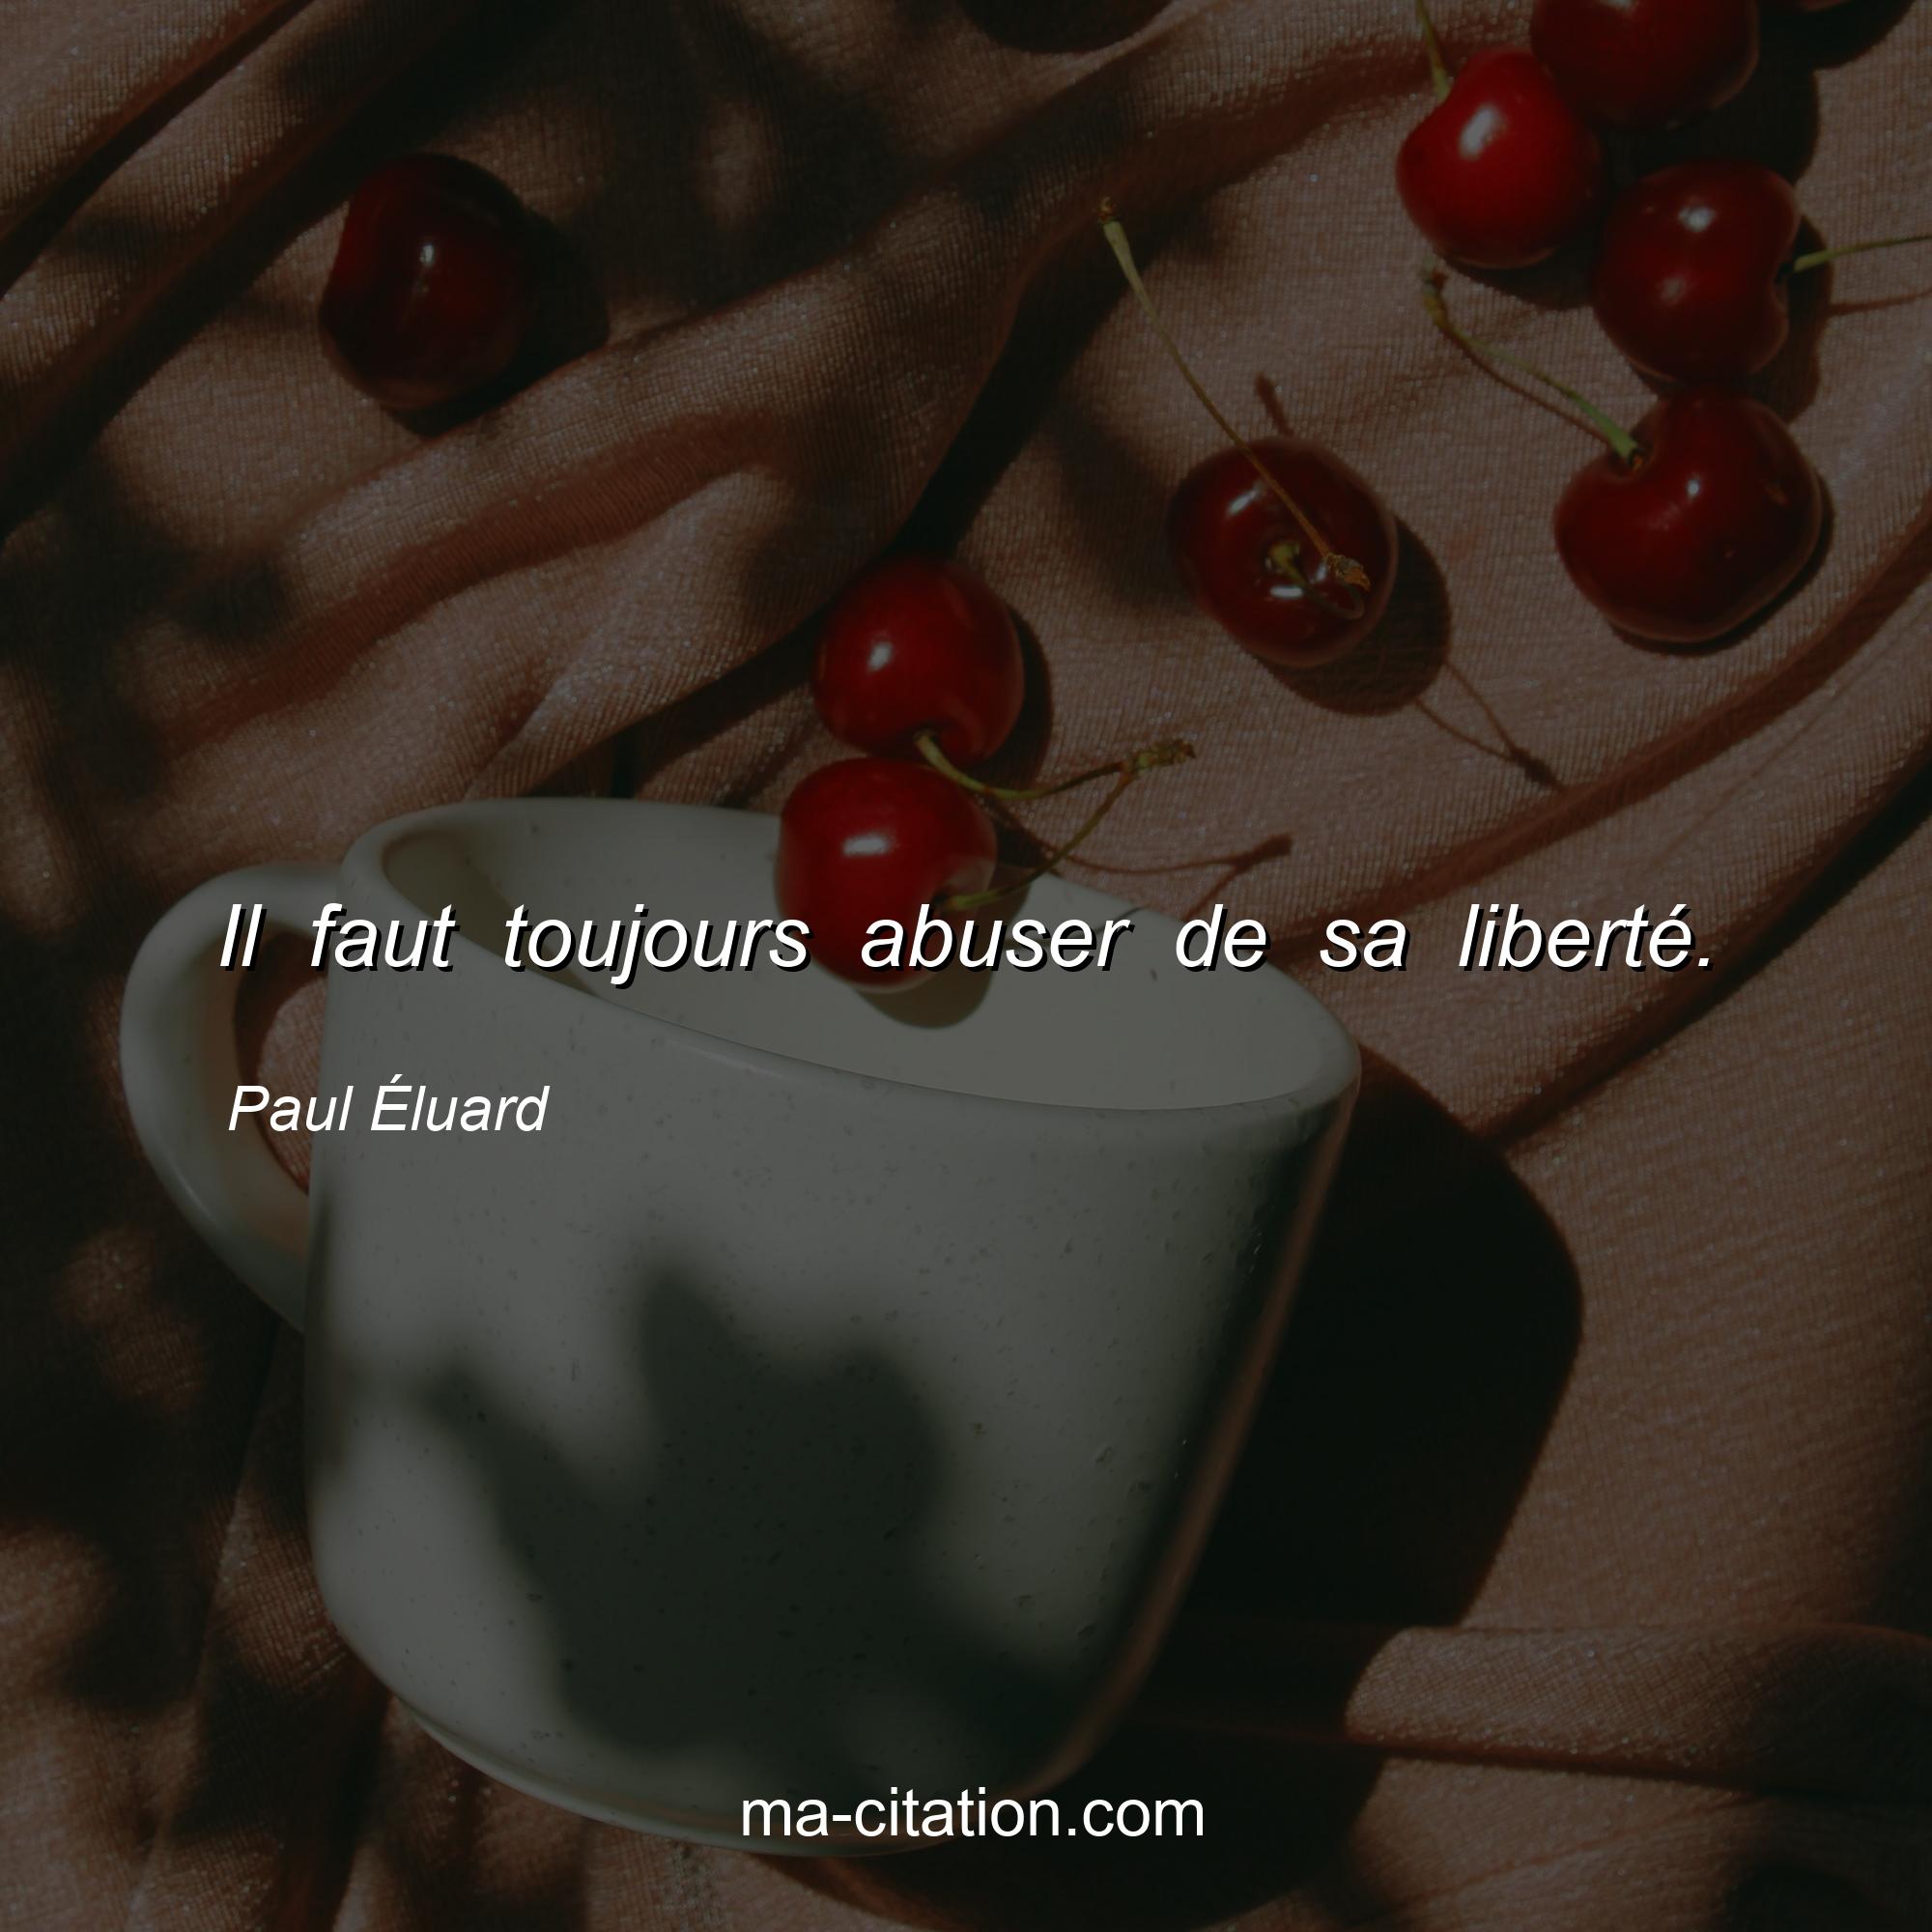 Paul Eluard : Il faut toujours abuser de sa liberté.